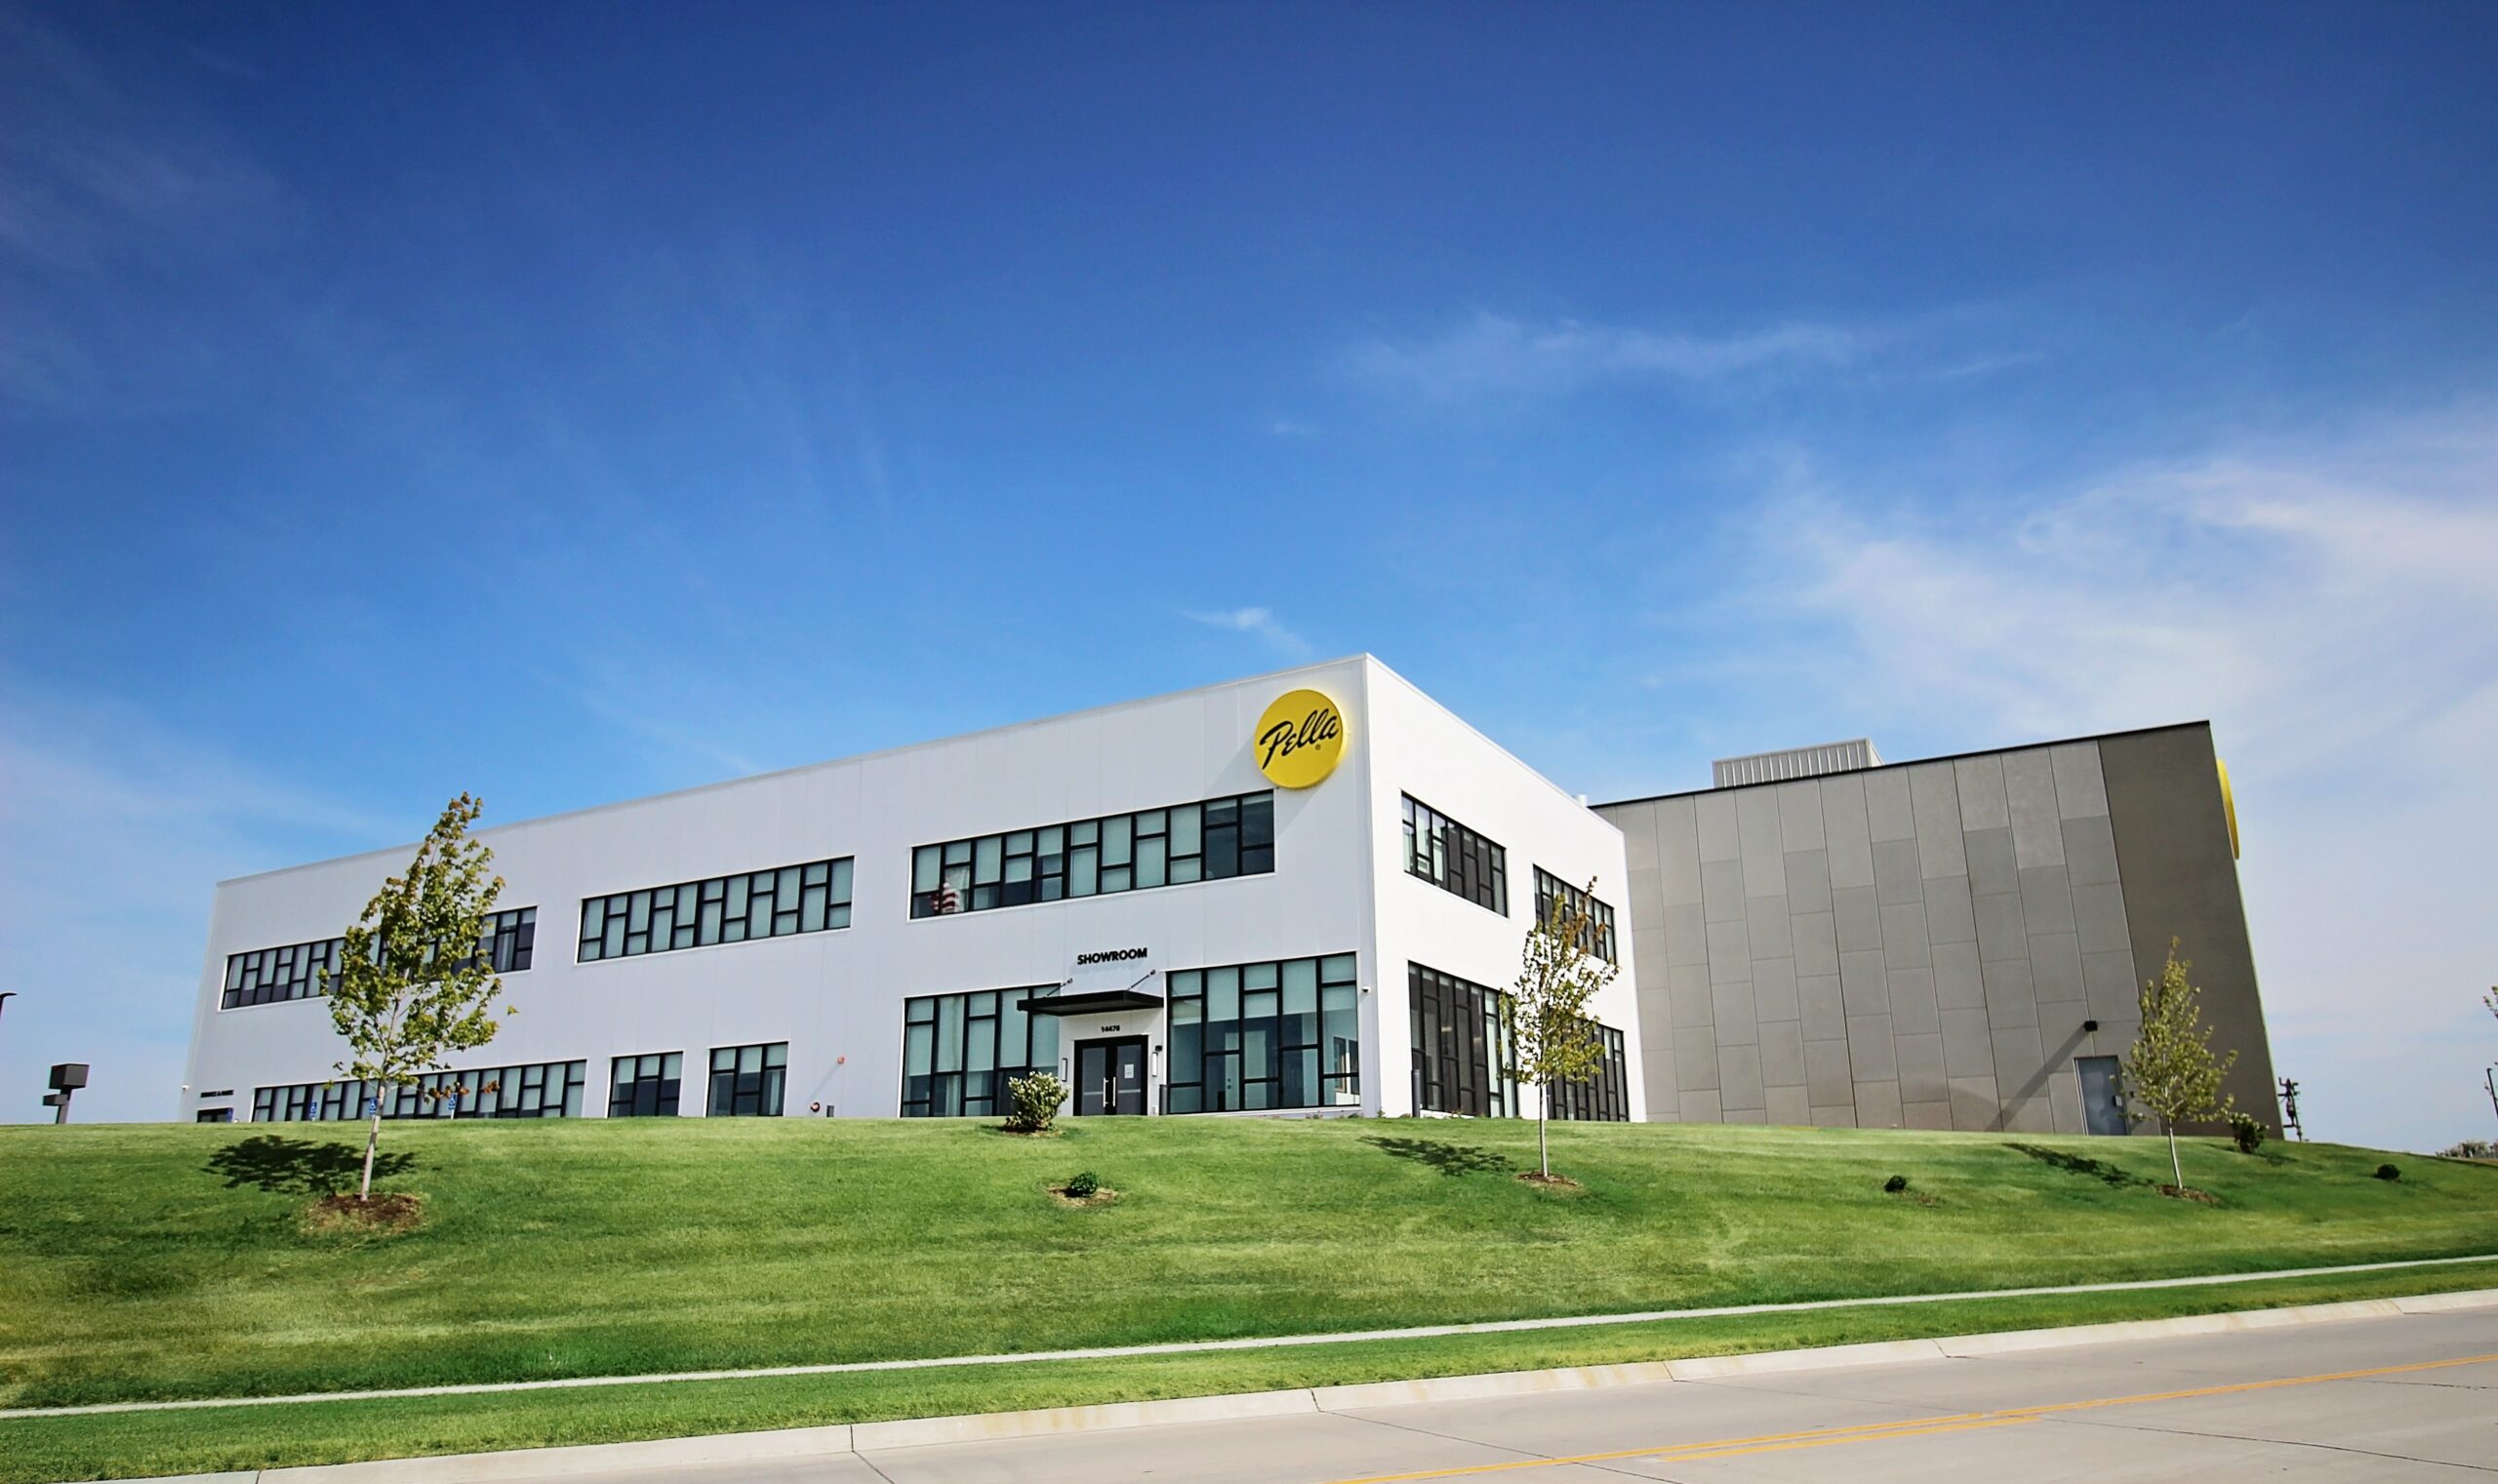 Pella – Best Window Company in Omaha